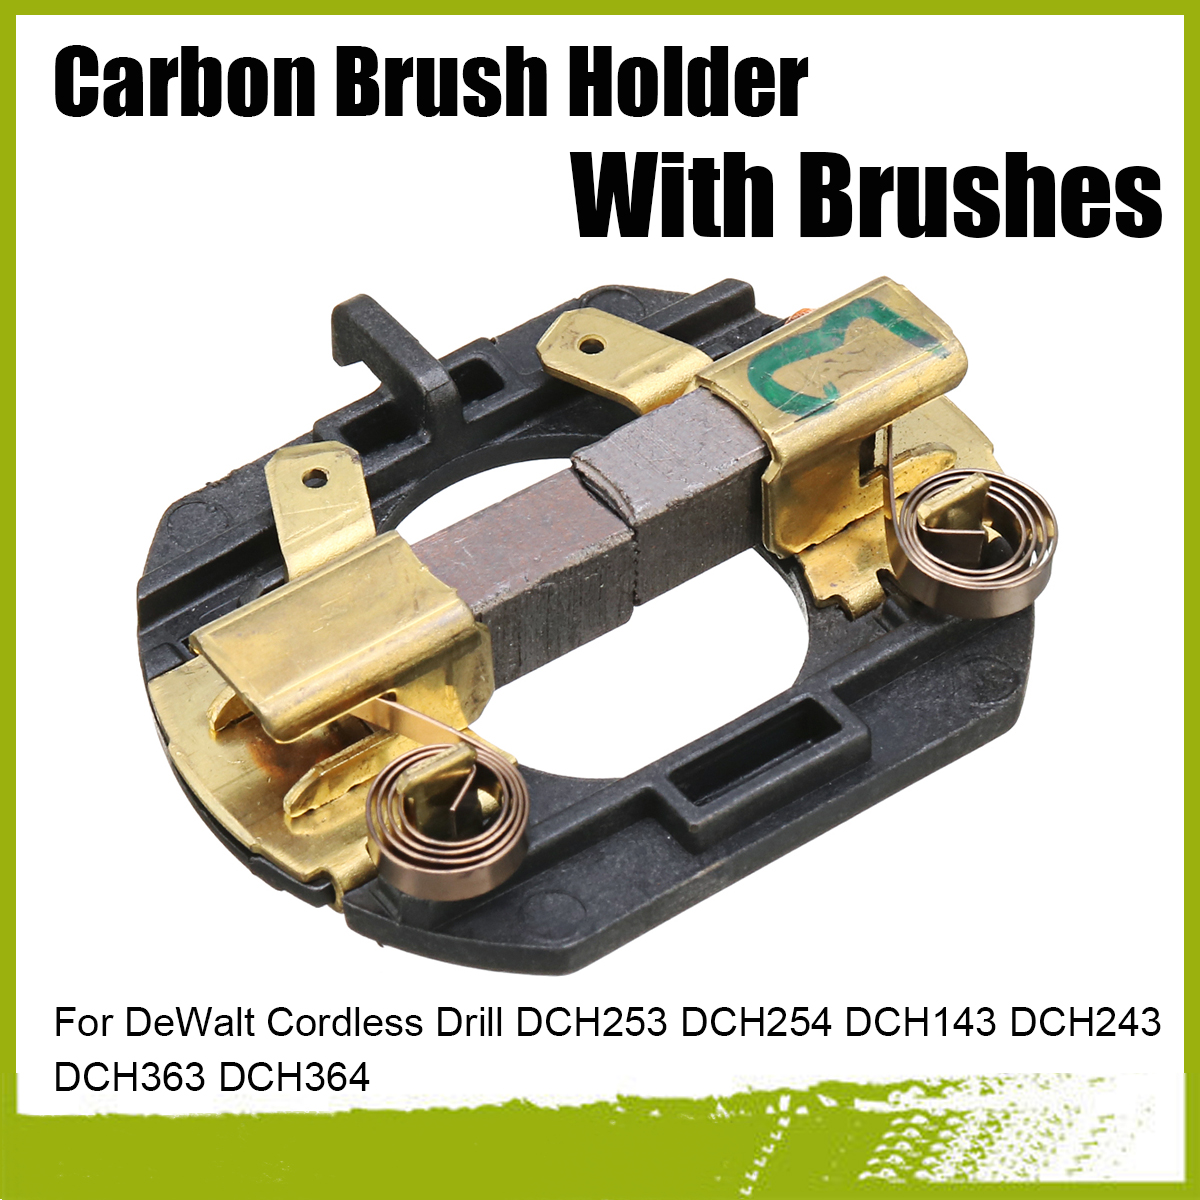 Carbon-Brush-Holder-Brushes-for-DeWalt-Cordless-Drill-DCD730-DCD735-DCD940-1632489